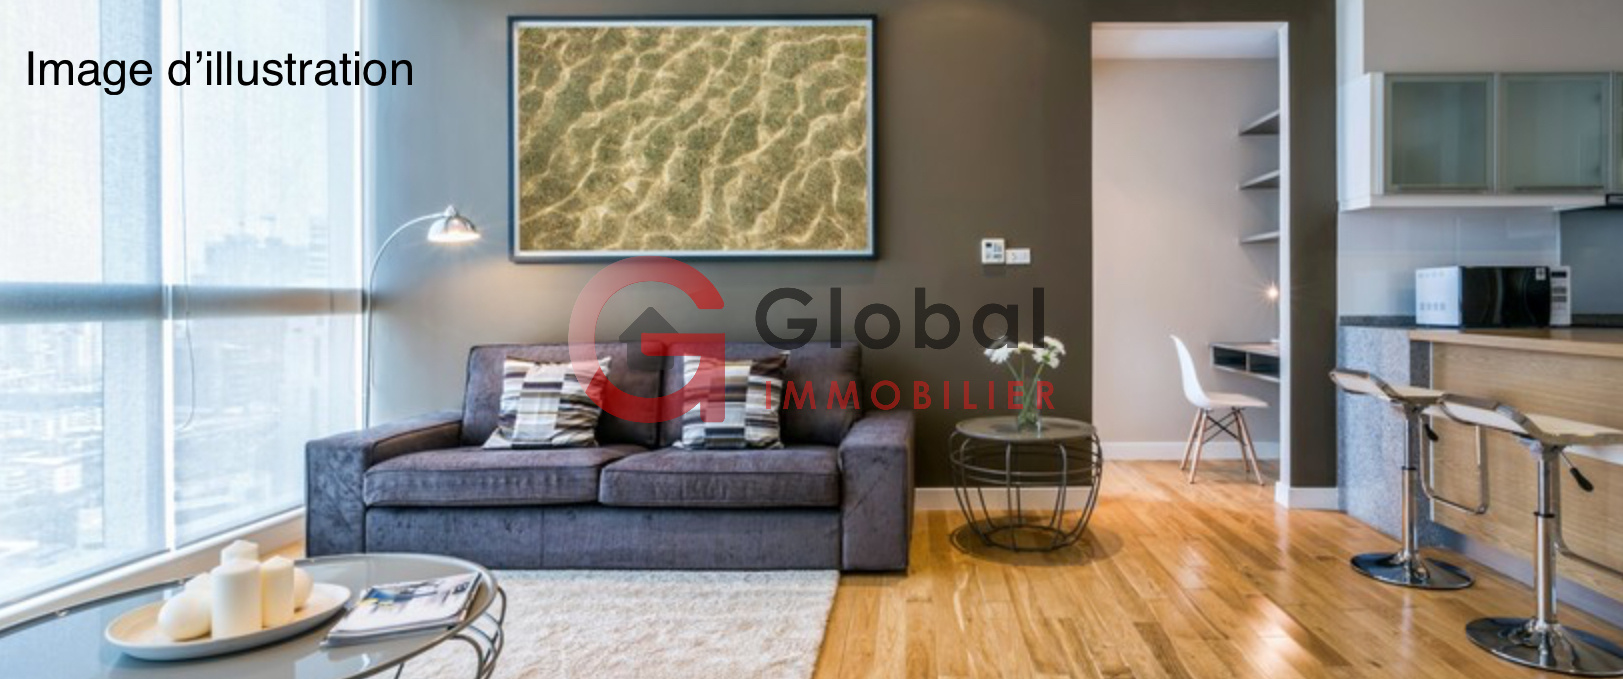 Vente Appartement 90m² 4 Pièces à Roanne (42300) - Global Immobilier